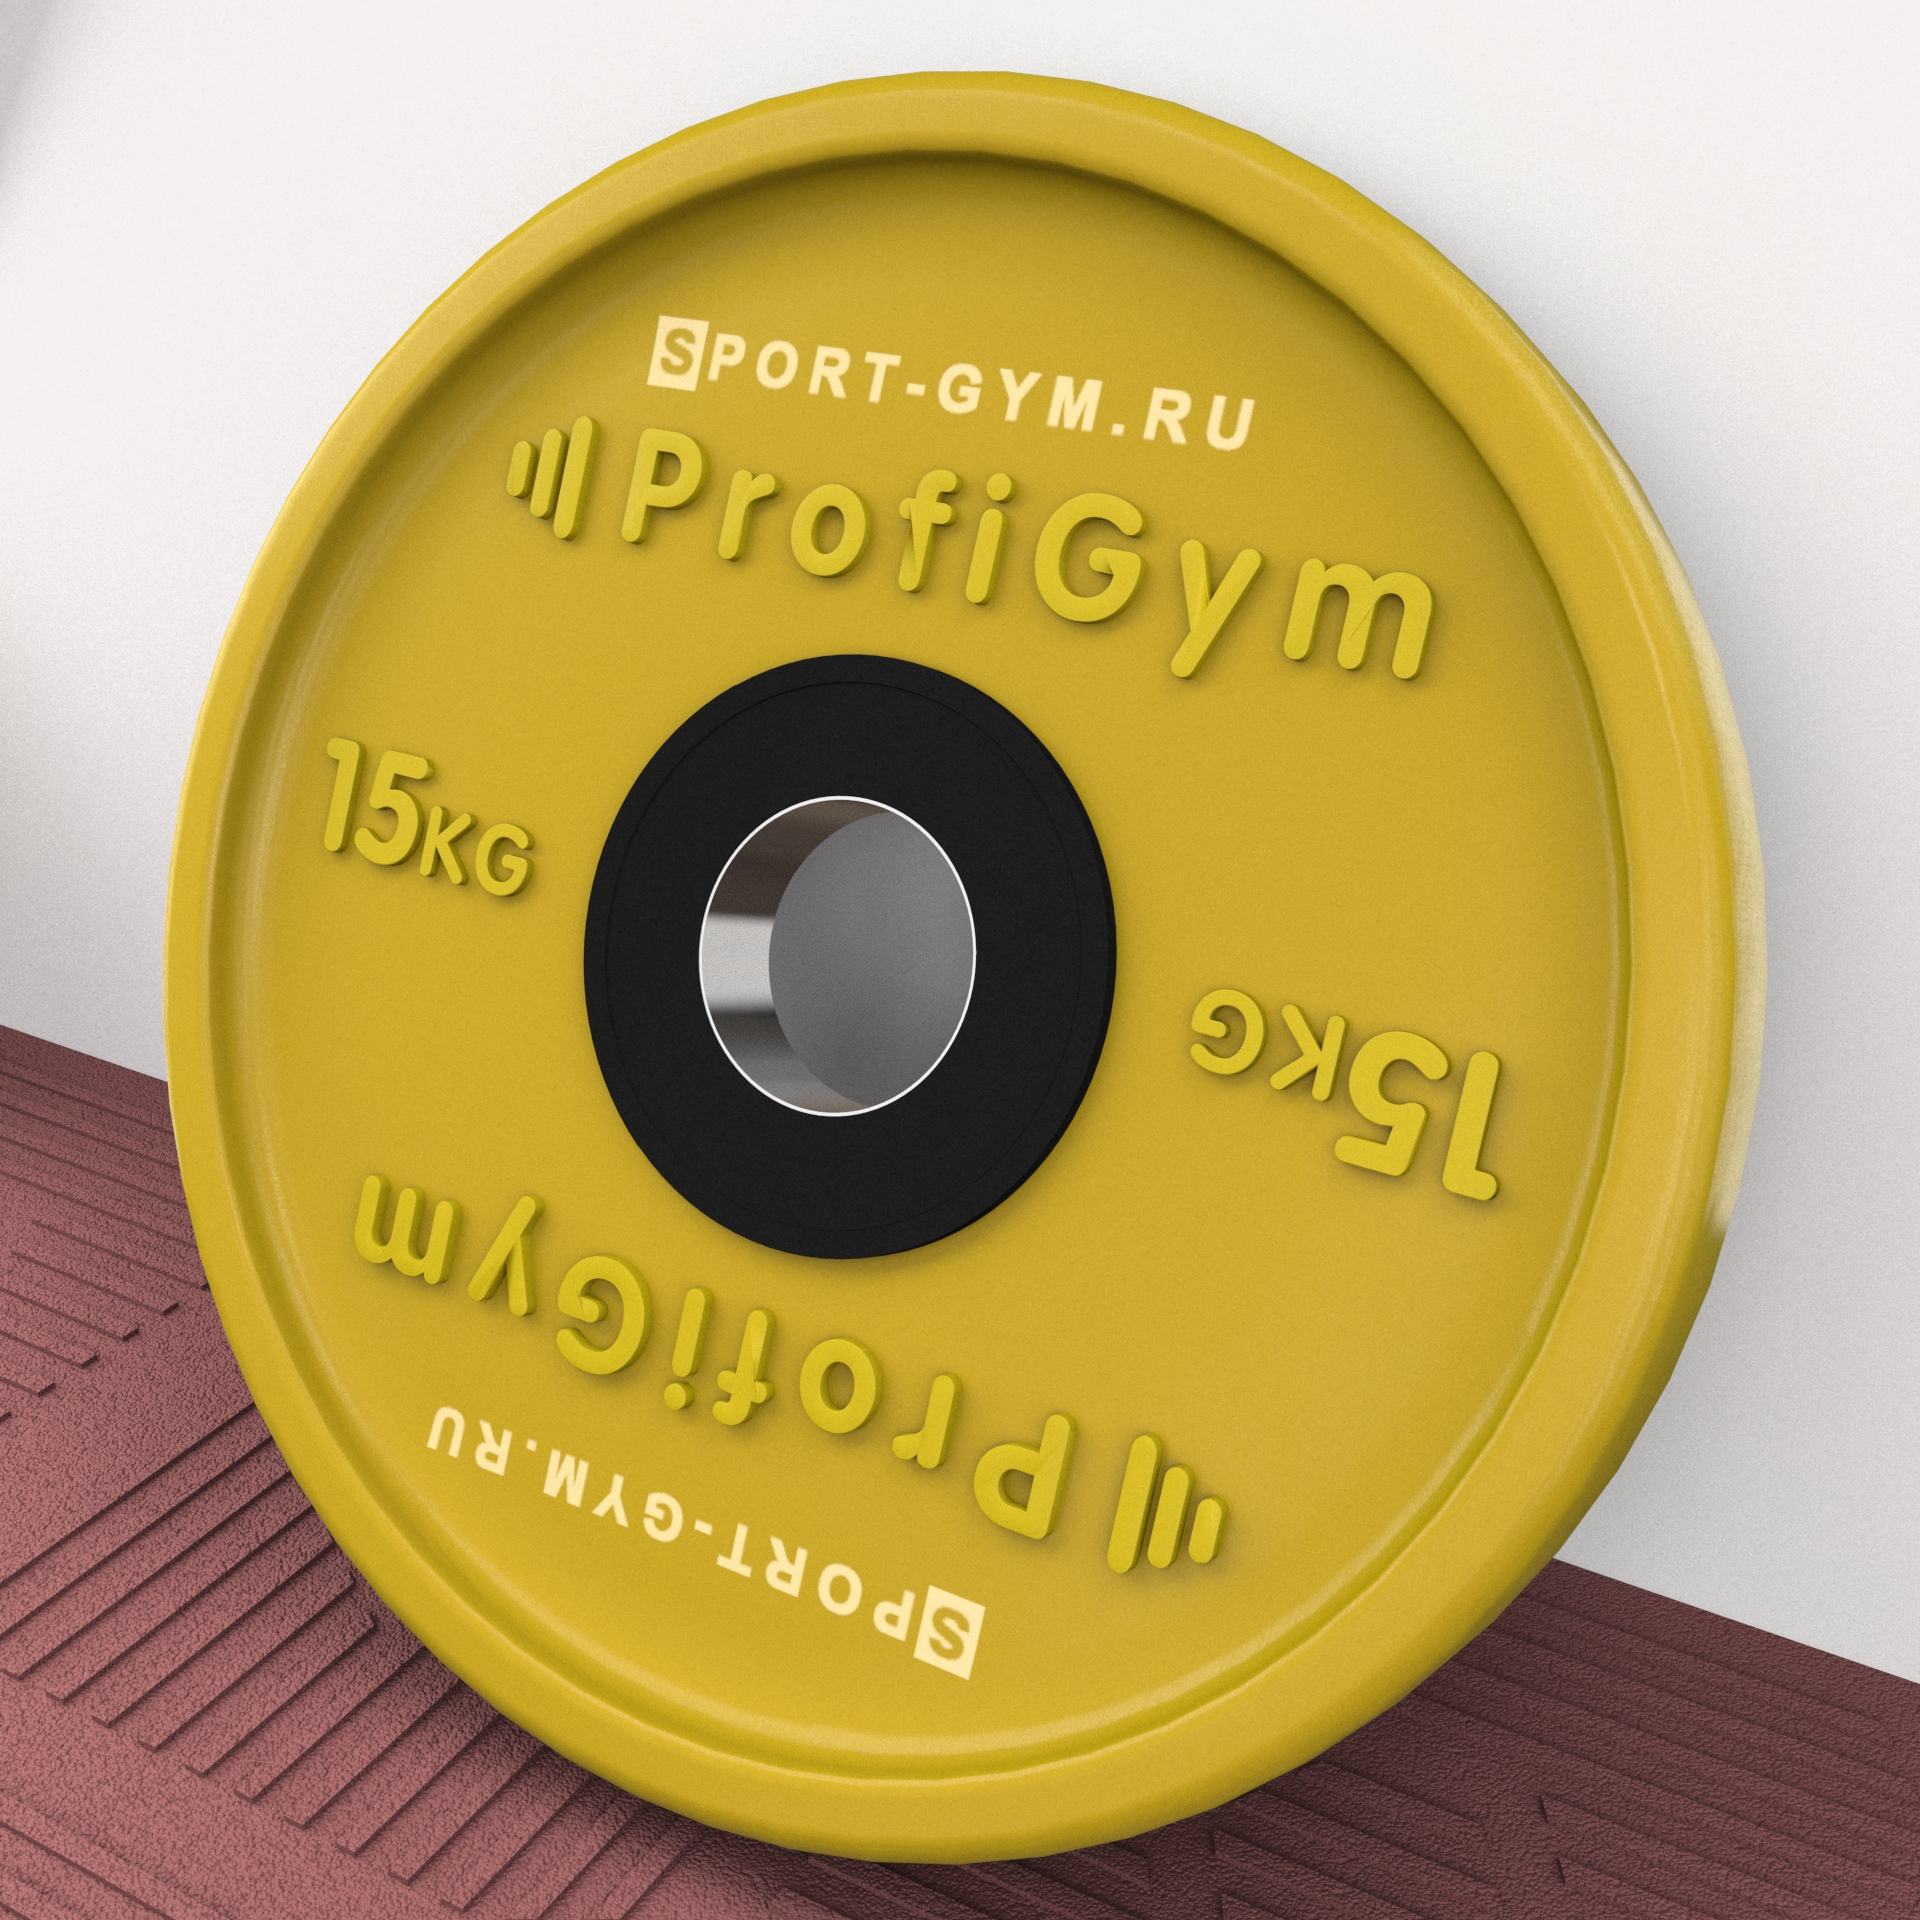 Цветной олимпийский диск Profigym 15 кг